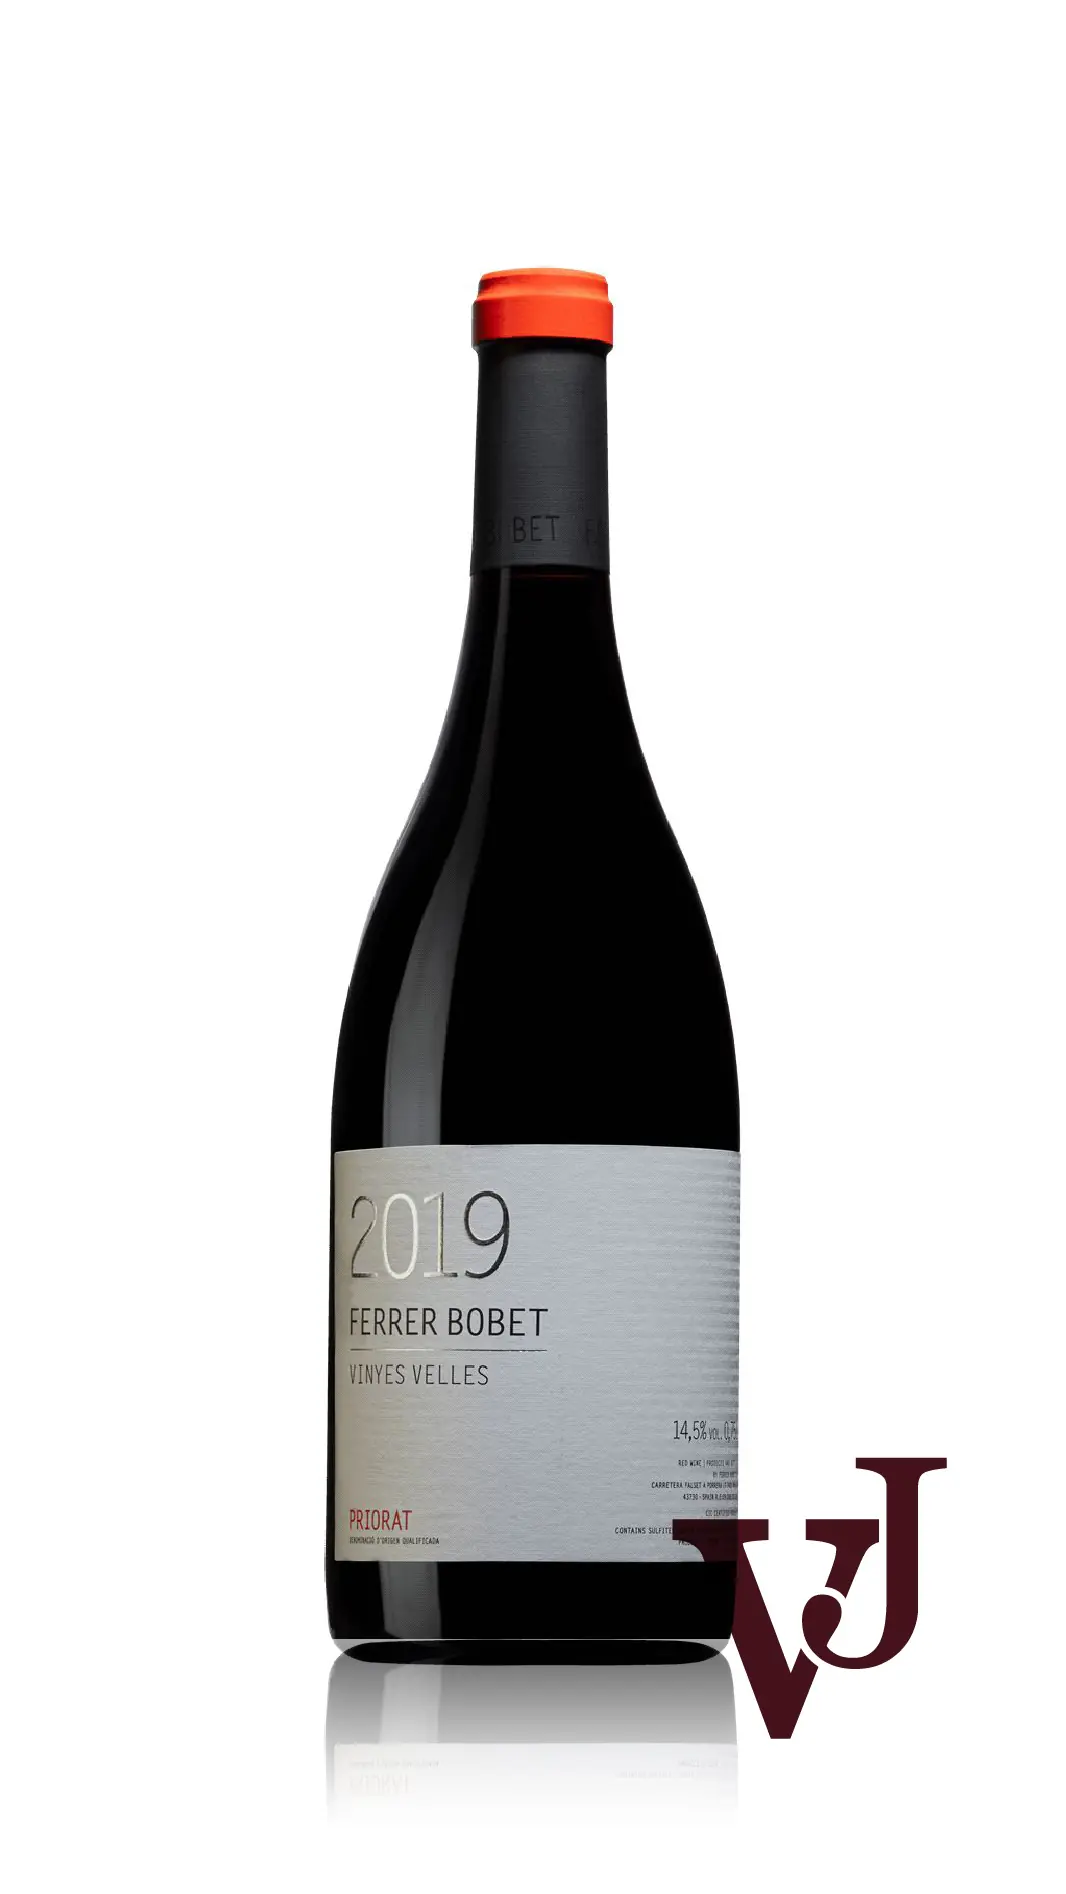 Rött Vin - Vinyes Velles artikel nummer 9476101 från producenten Ferrer Bobet från området Spanien - Vinjournalen.se